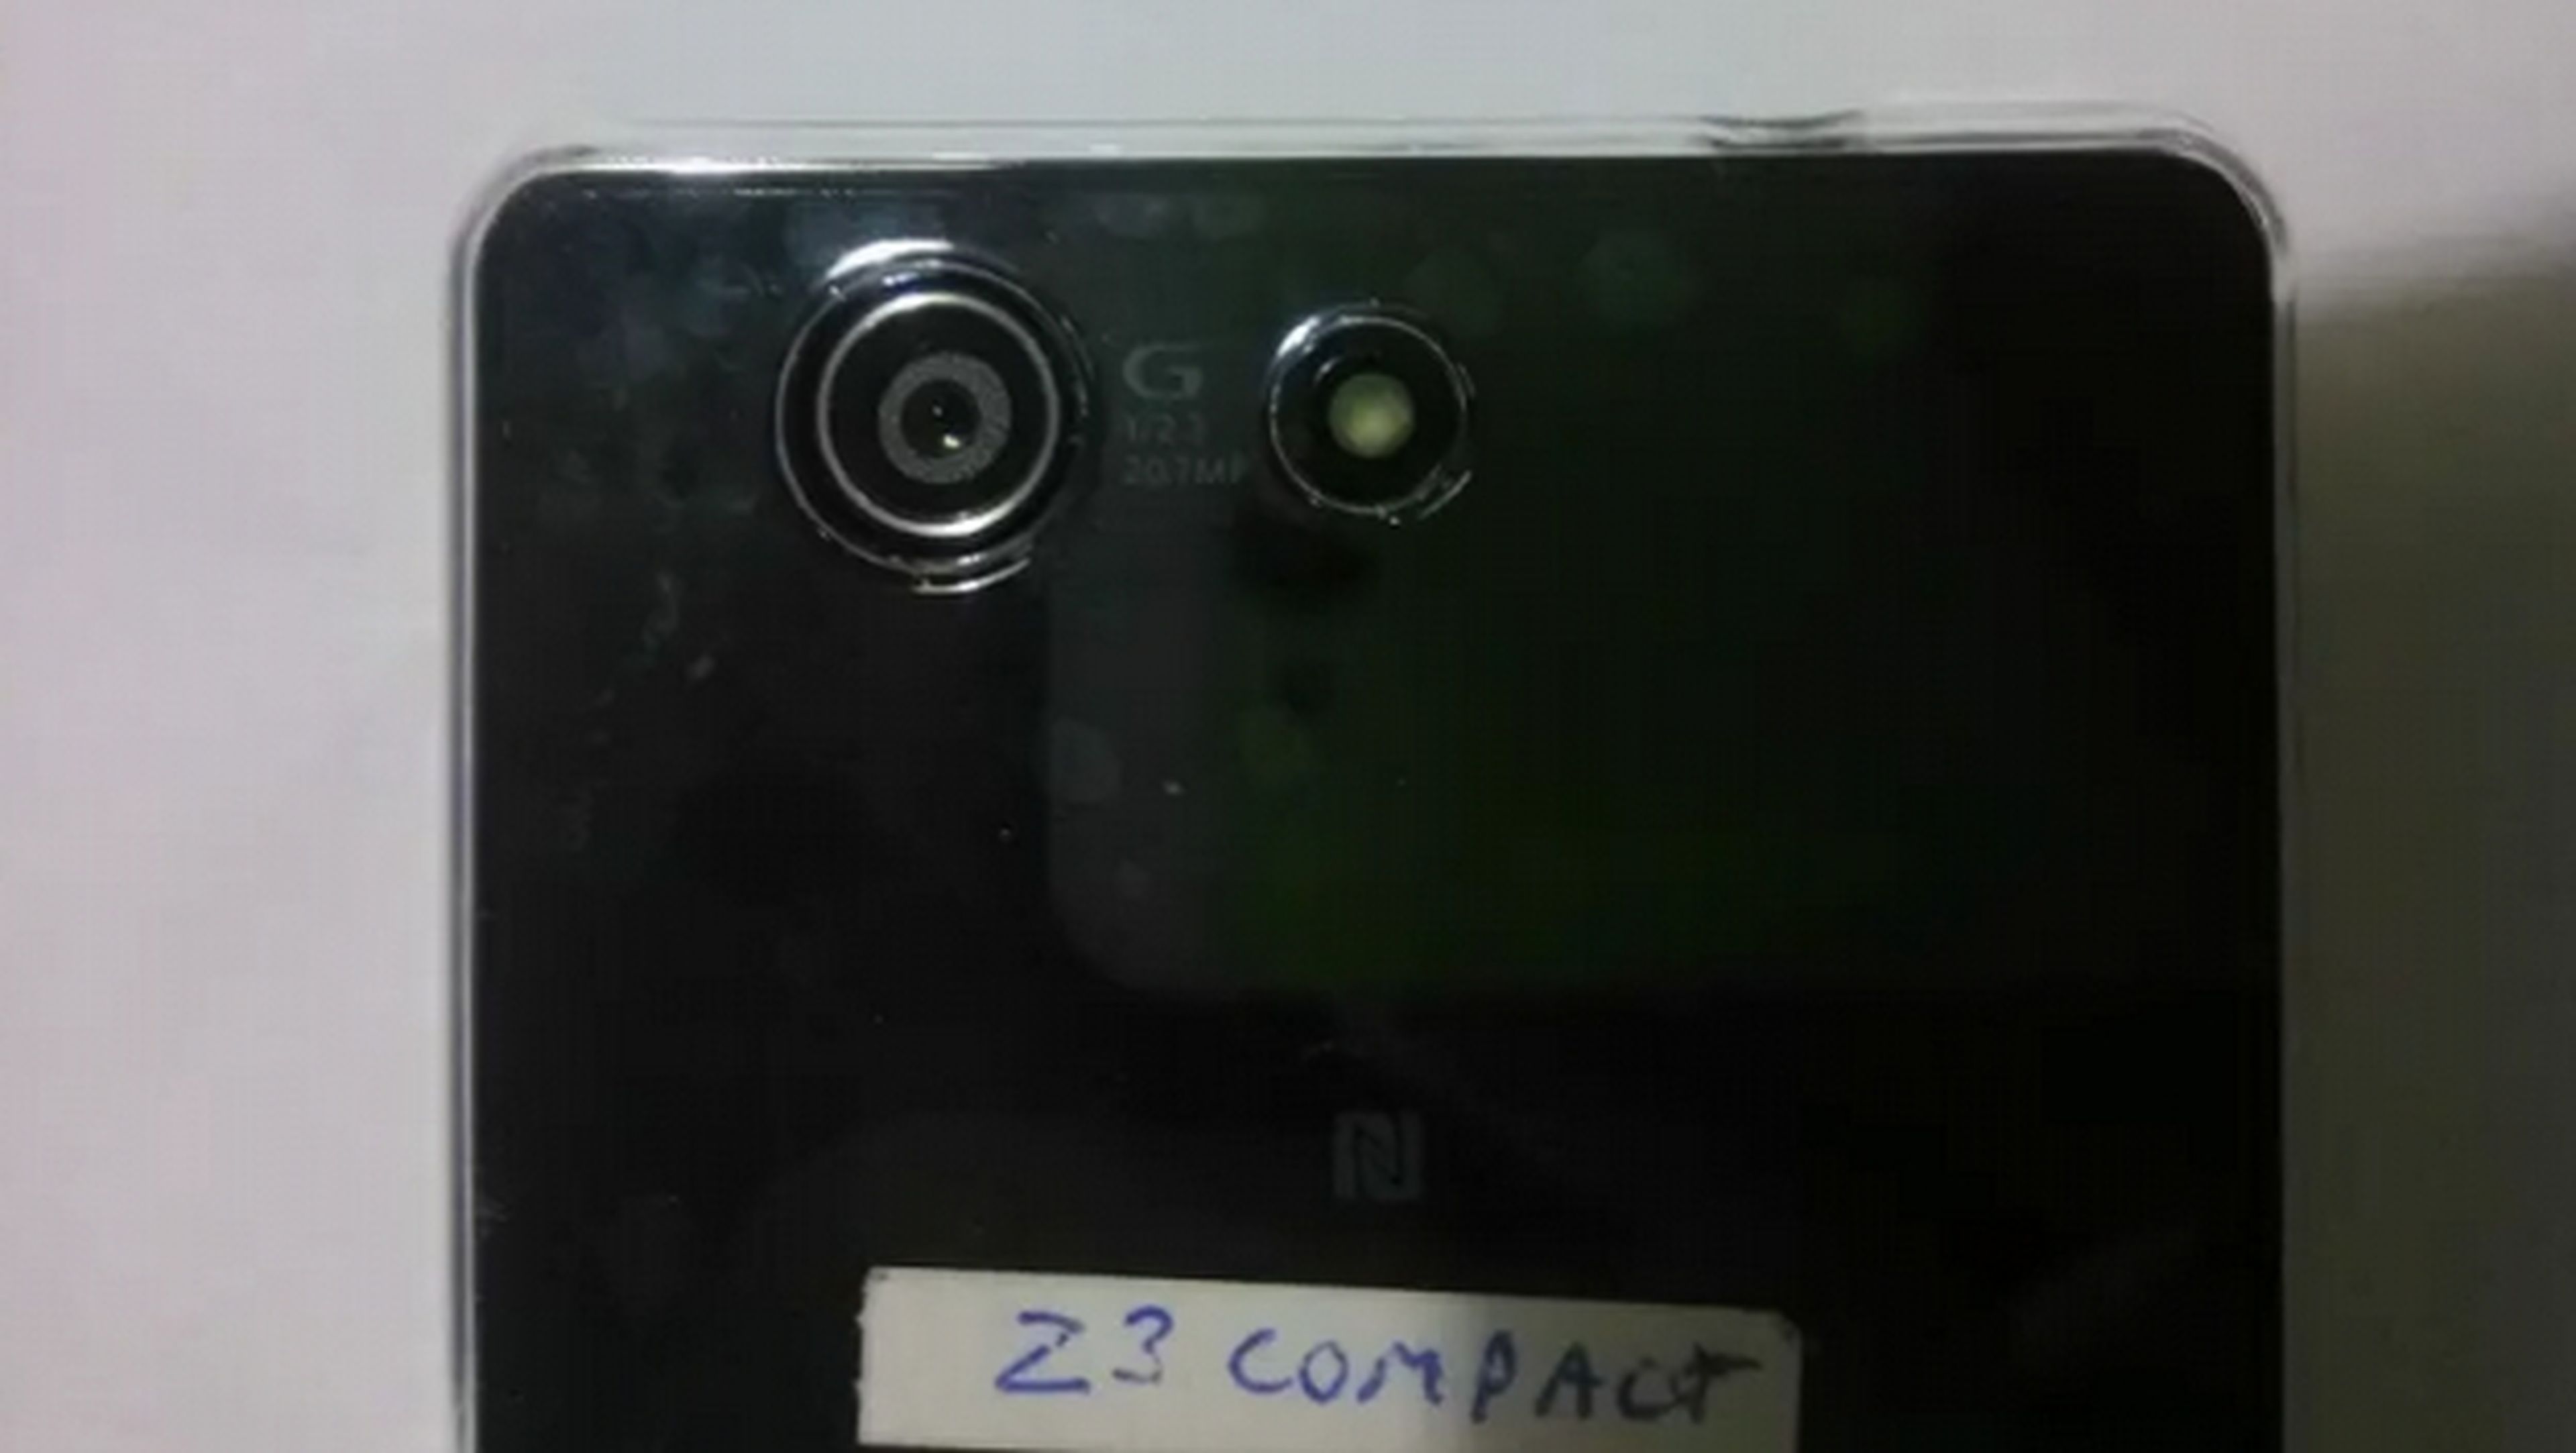 Desvelado el sensor de cámara del Sony Xperia Z3 Compact